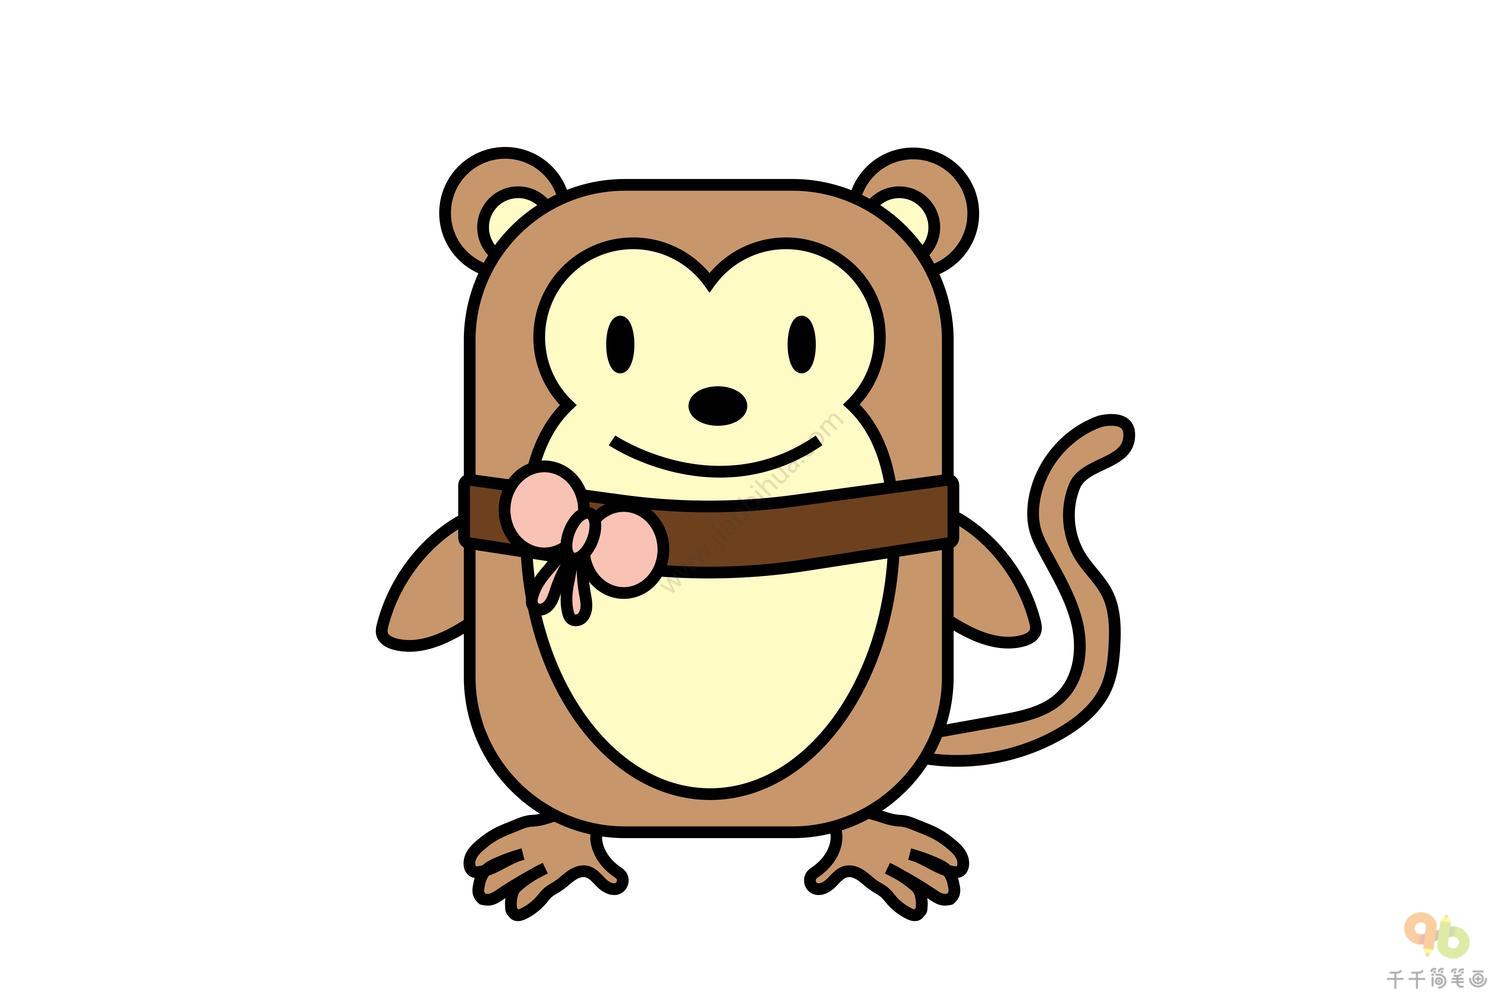 小猴子简笔画步骤图 简单好画_动物头像简笔画